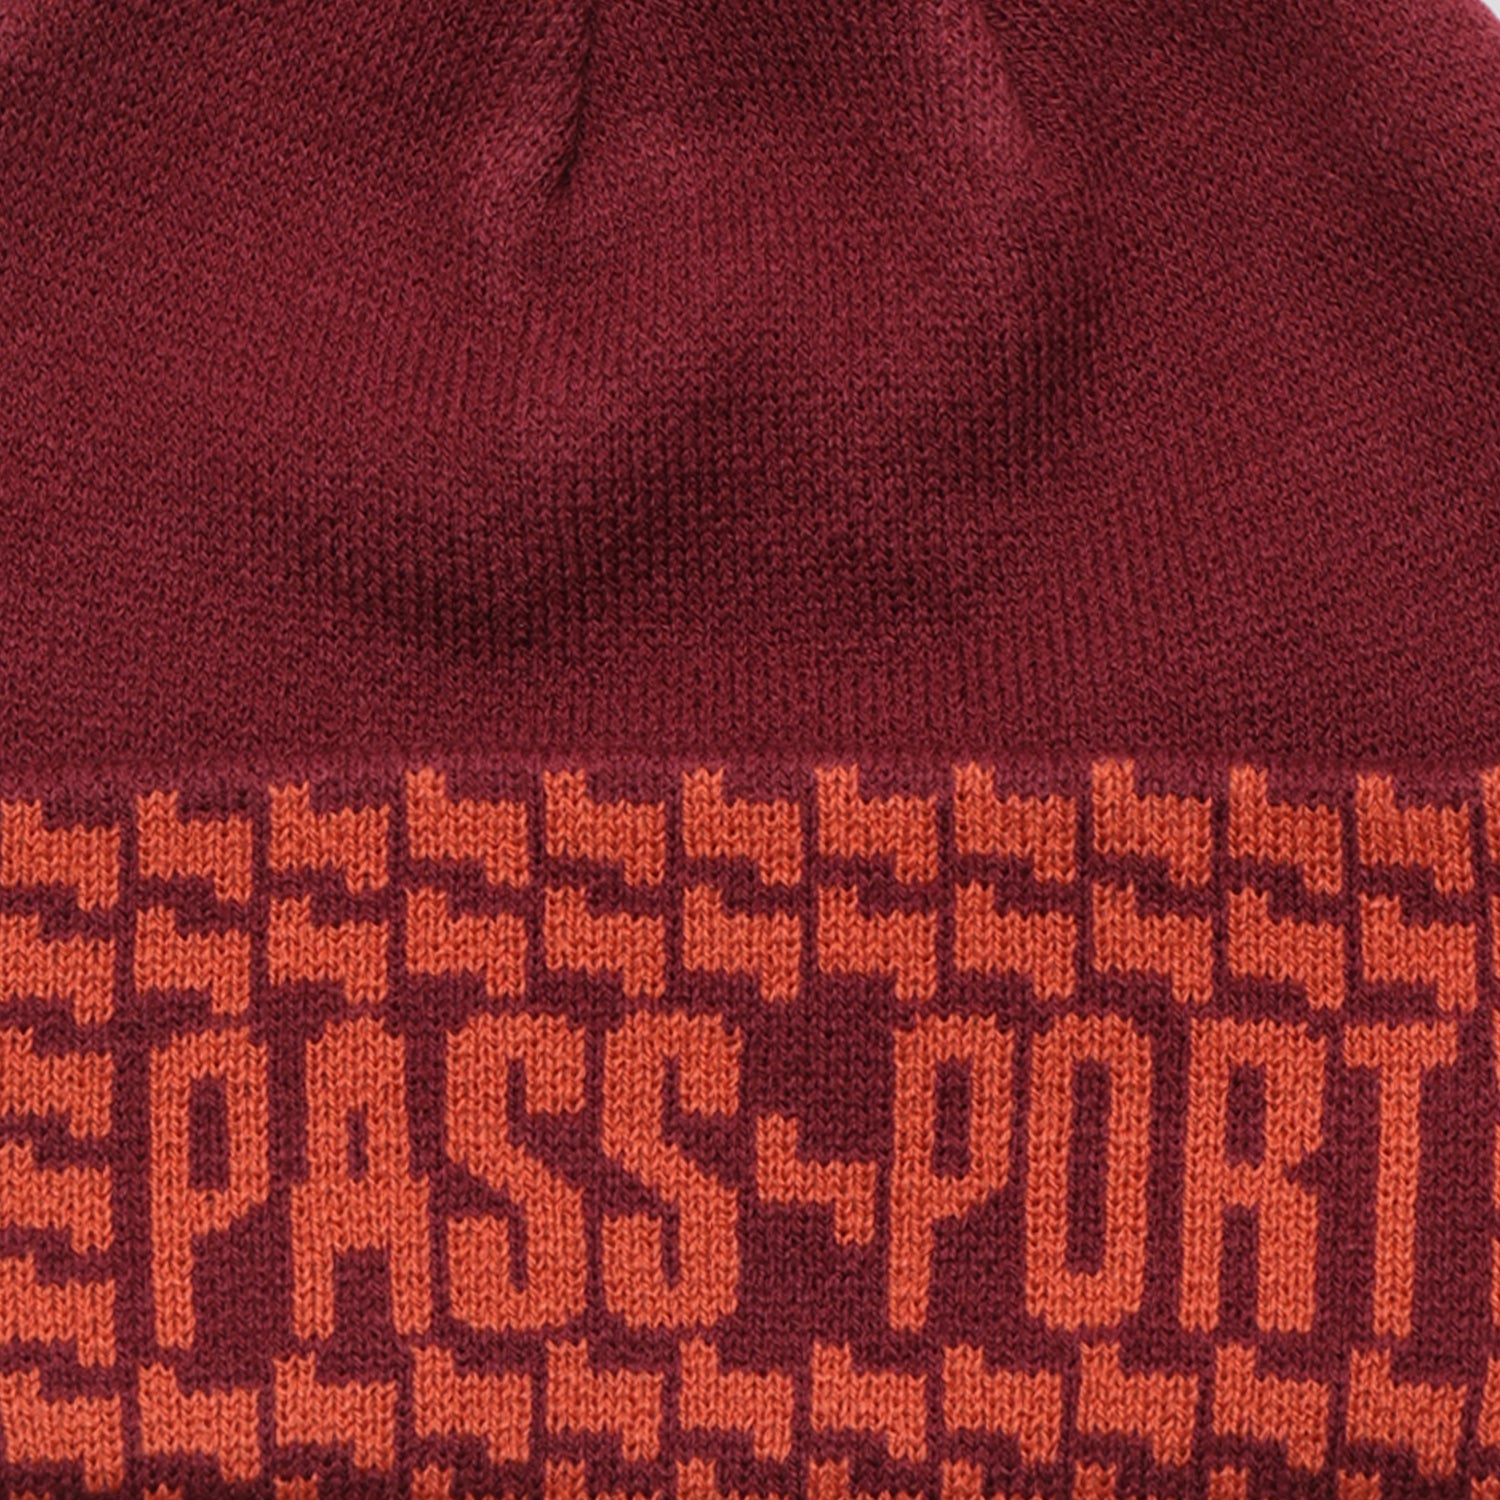 Pass~Port Drain Beanie - Rust